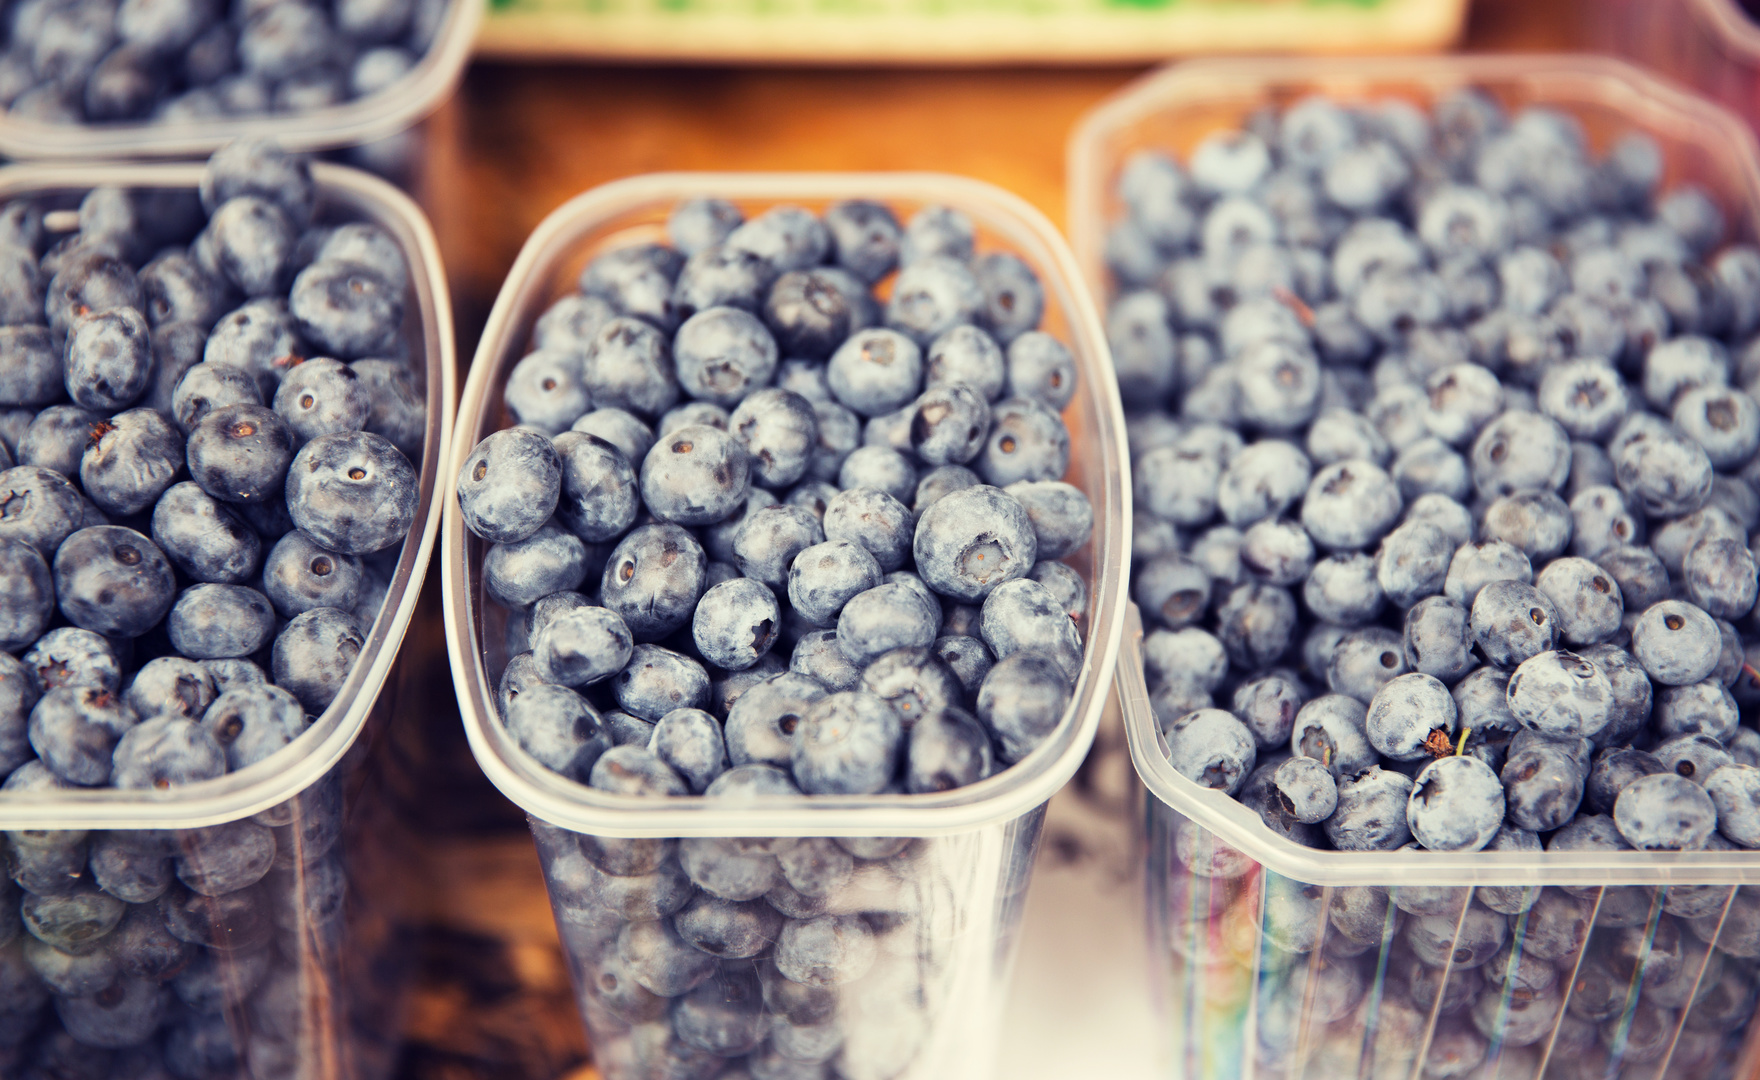 生より栄養価が高い 冷凍ブルーベリーの保存方法 レシピをご紹介 急速冷凍 による高品質な業務用食材通販マーケット